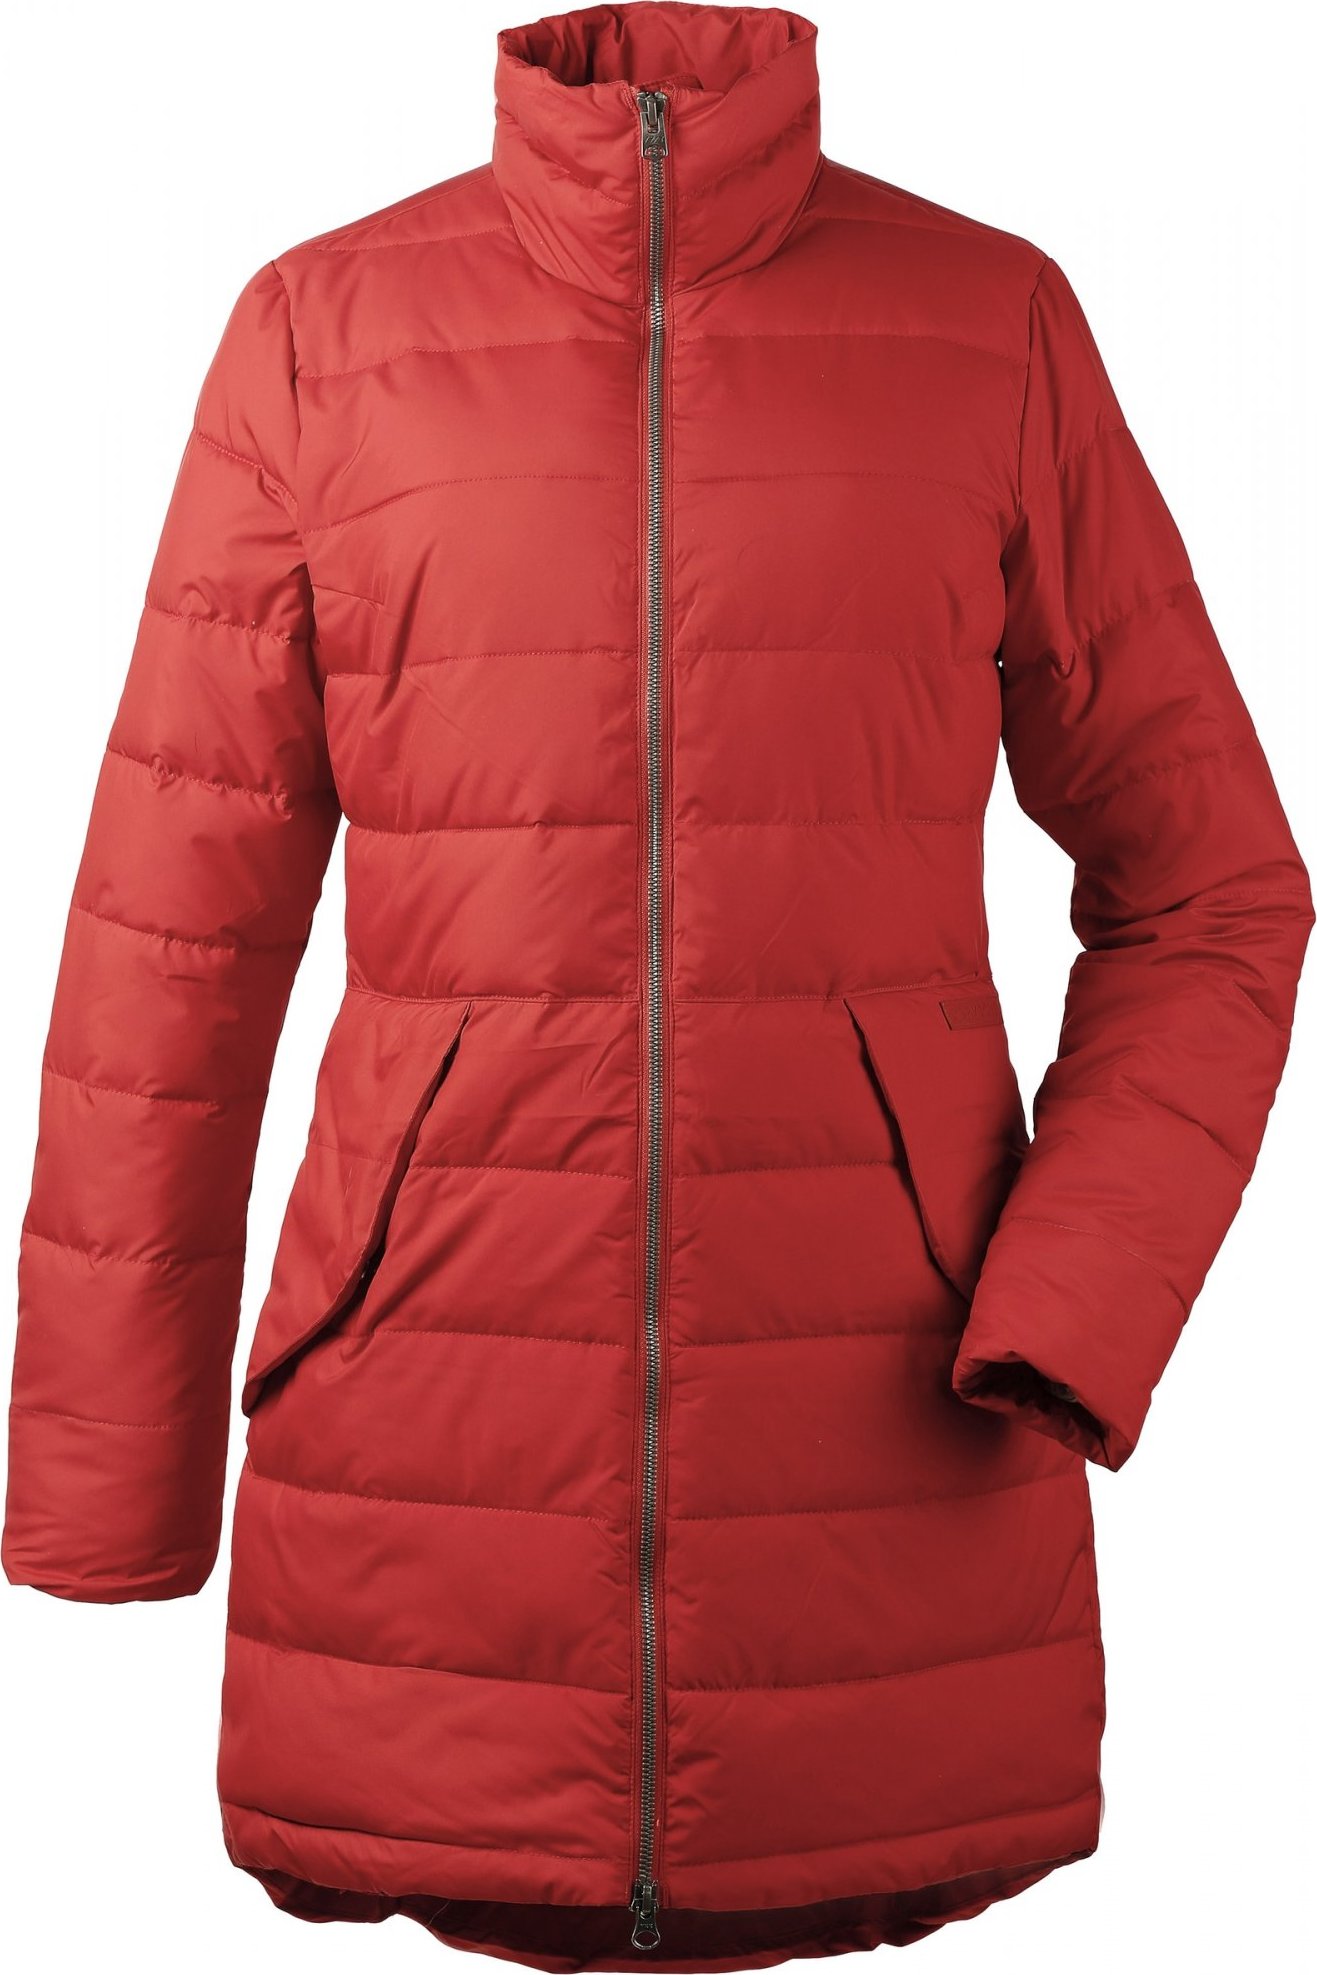 Dámský zimní kabát DIDRIKSONS Hildur oranžový Velikost: 44